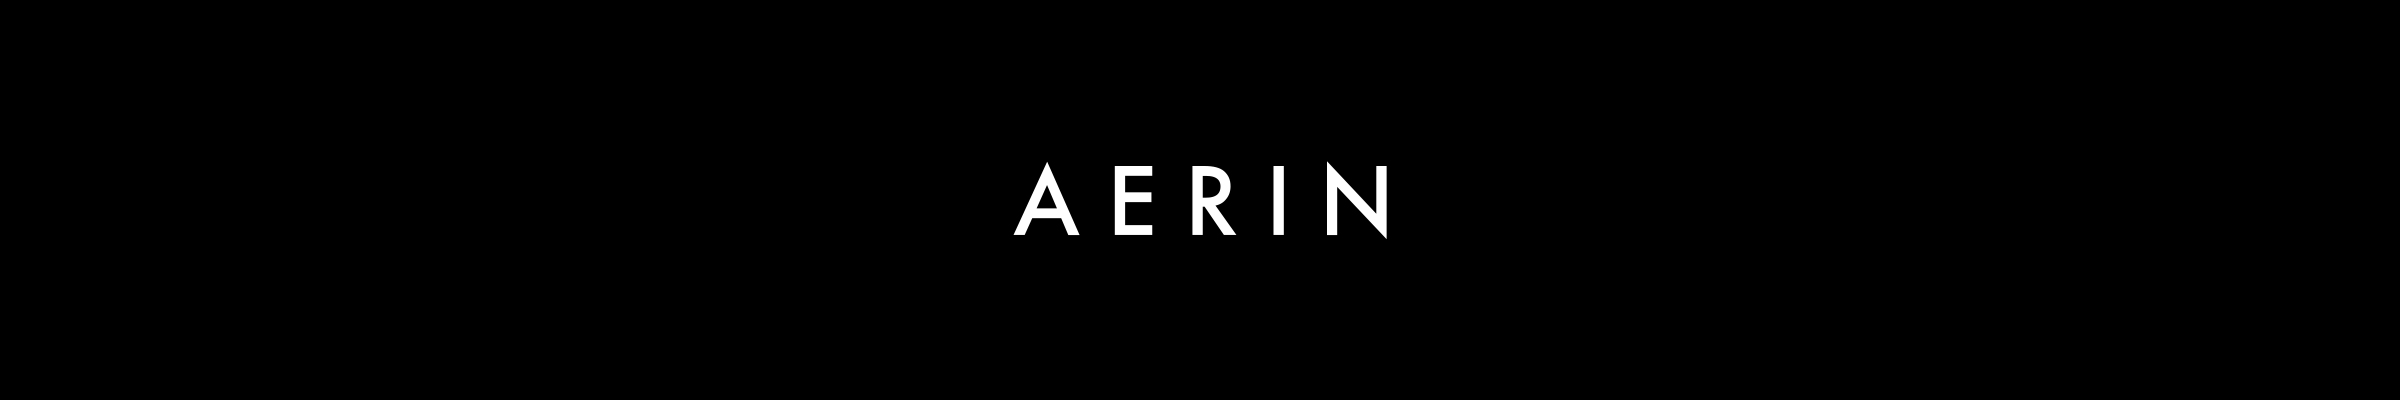 aerin-banner